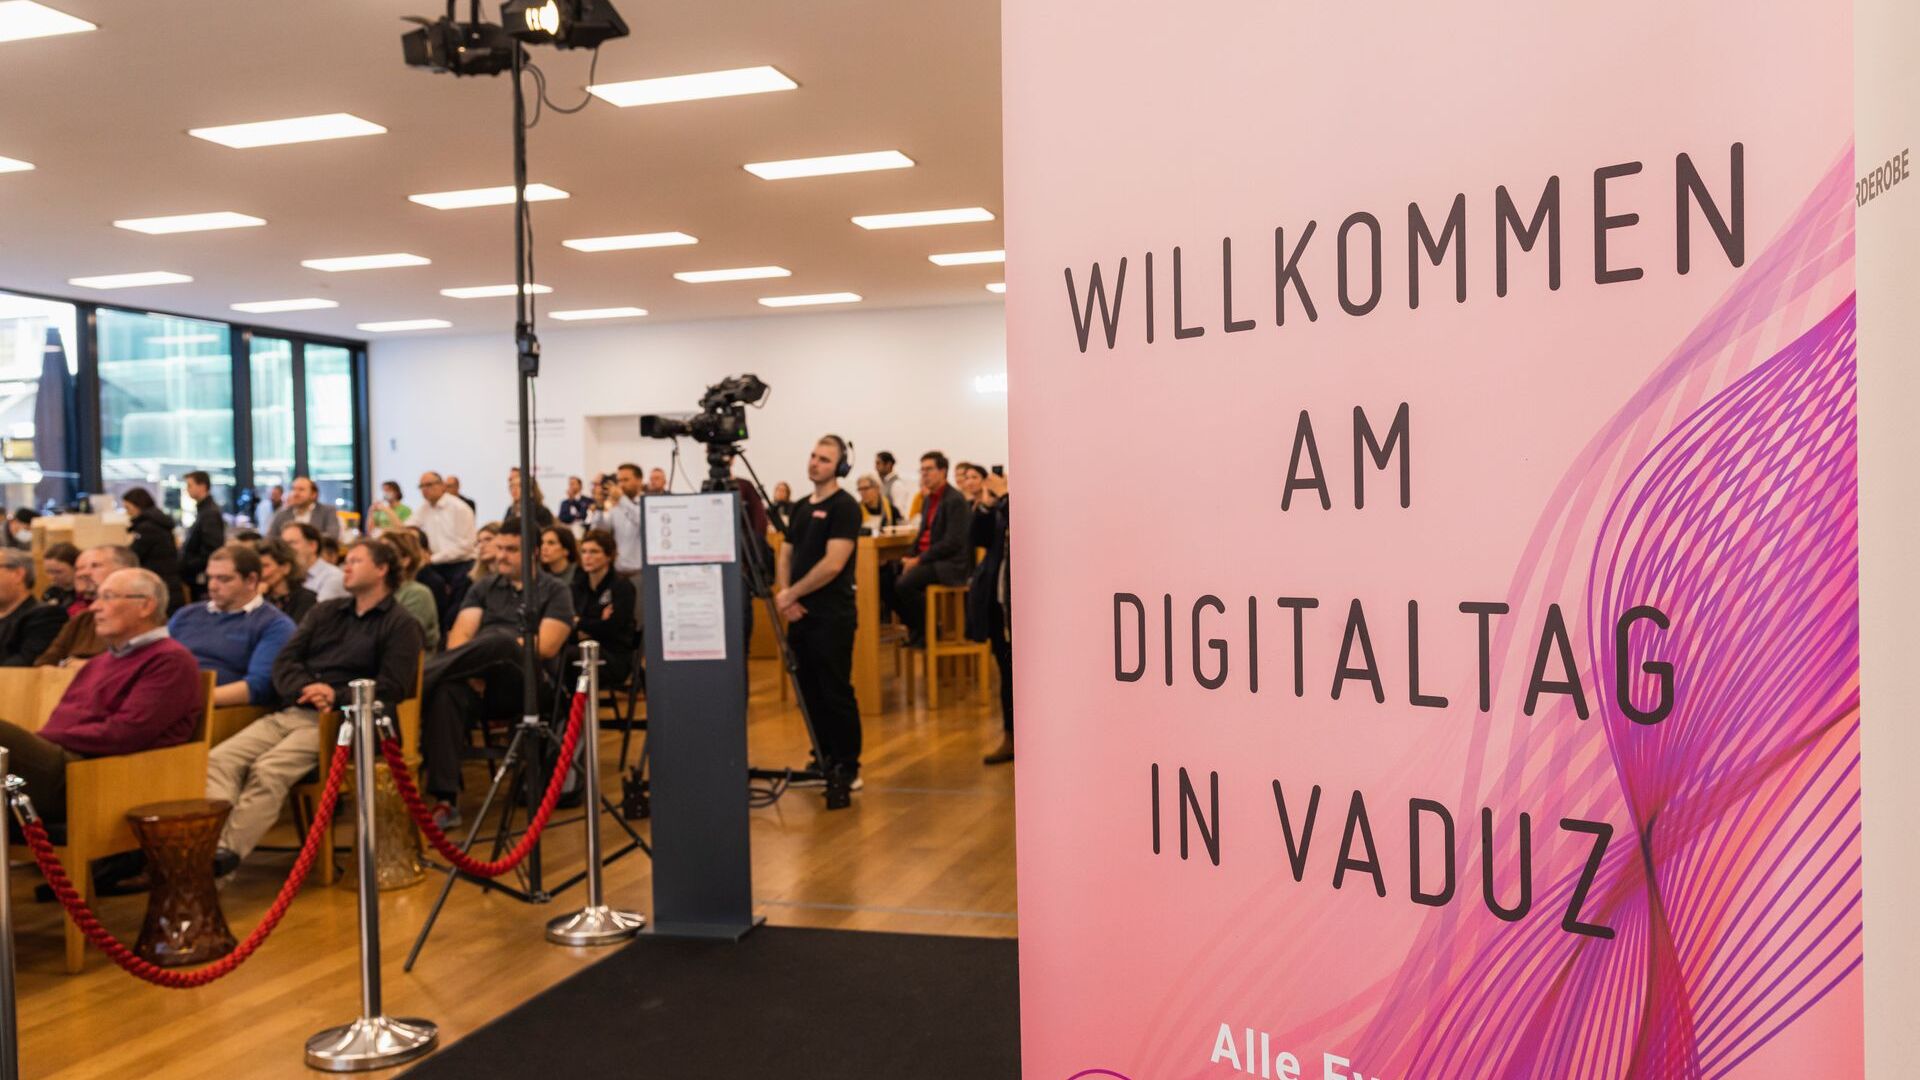 La “Digitaltag Vaduz” è stata accolta dal Kunstmuseum della capitale del Principato del Liechtenstein sabato 6 novembre 2021